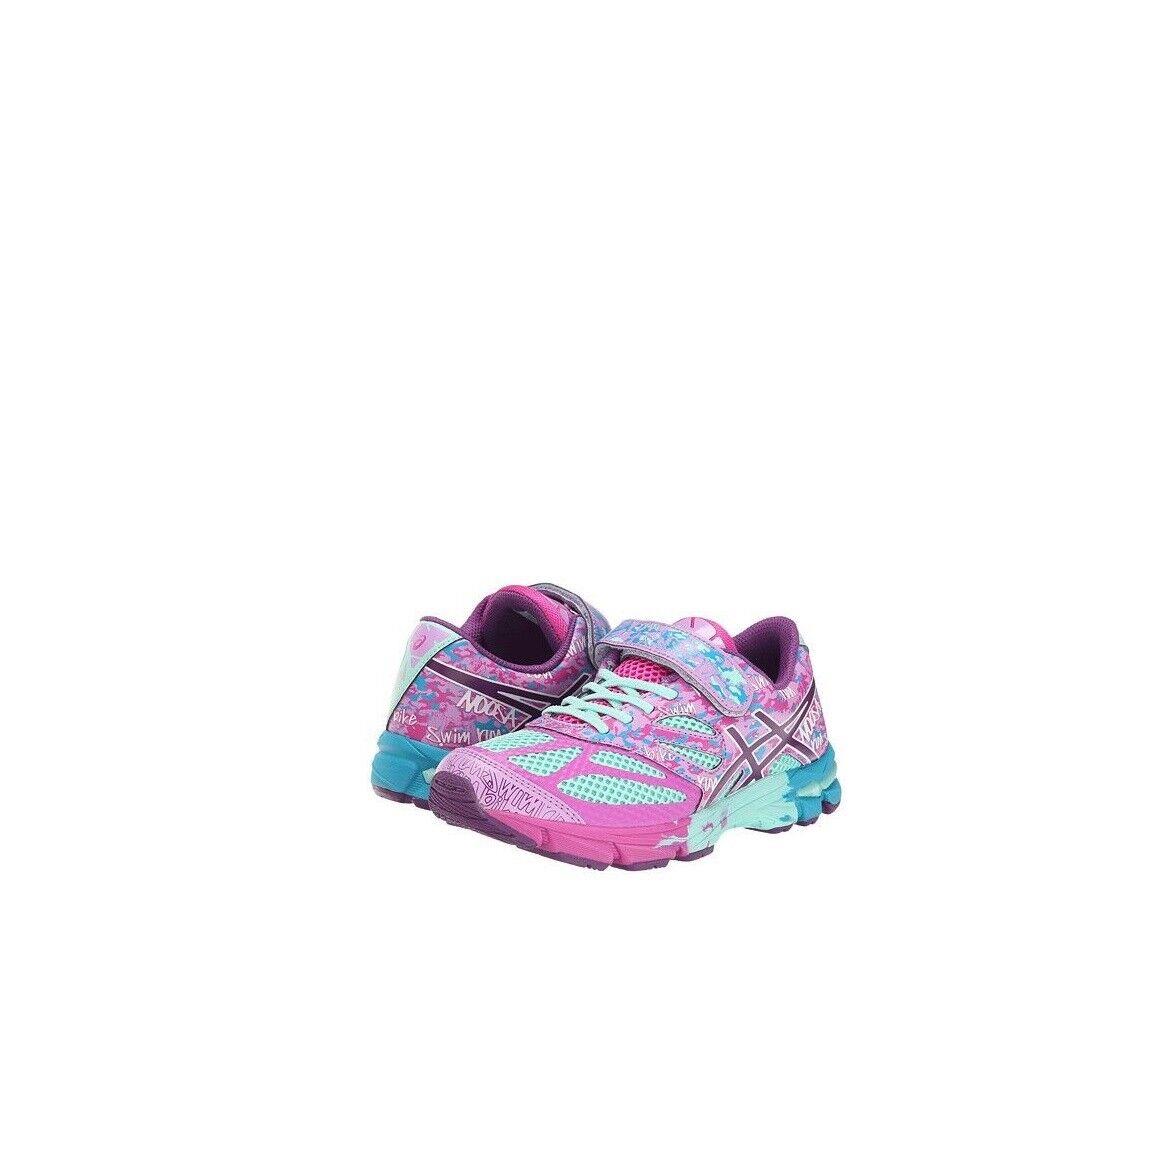 Asics Gel Noosa Tri 10 PS Little Kid Running Shoe Beach Glass/plum Pink 2.5M - Pink